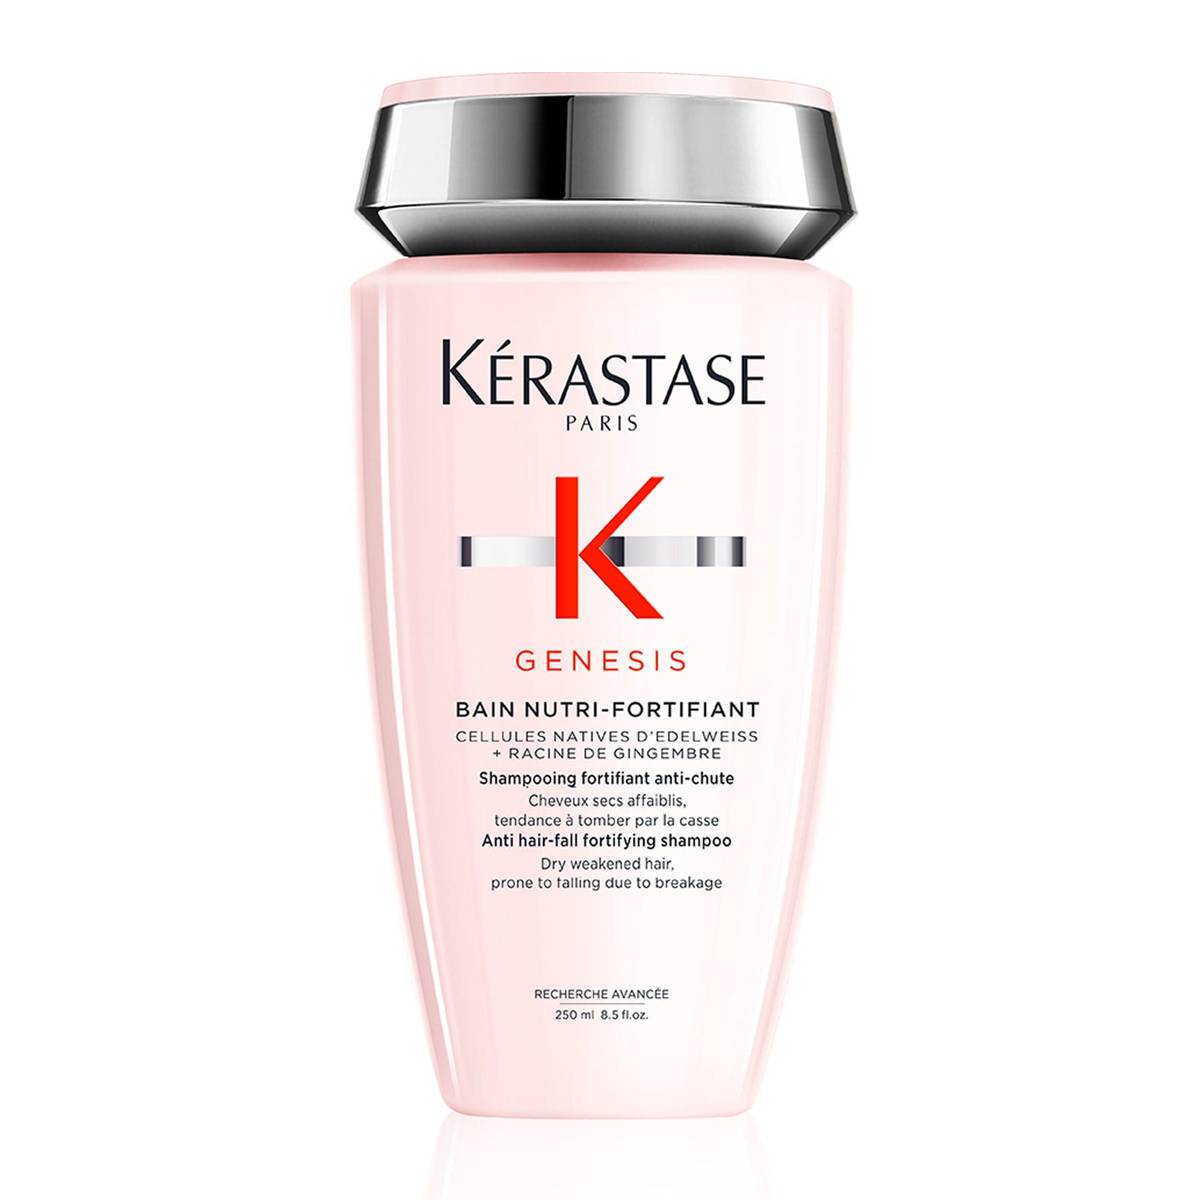 Kérastase Genesis Anti Hair-Fall Fortifying Shampoo